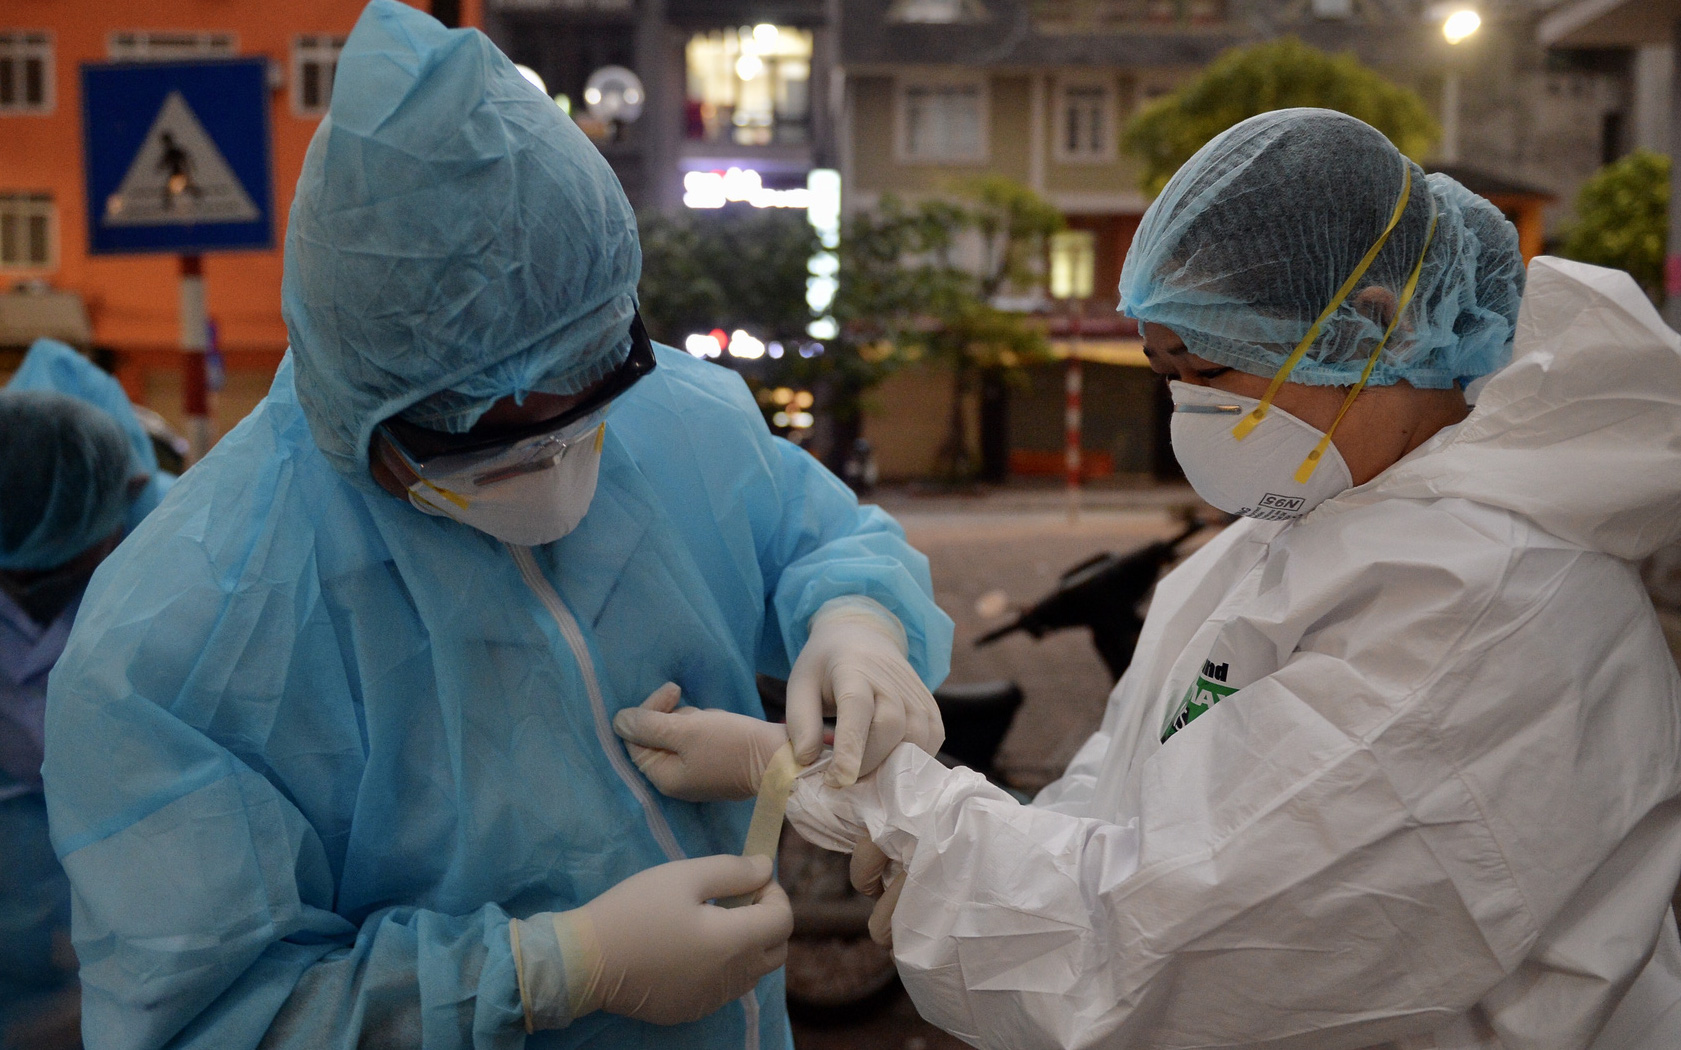 Phó Giám đốc Bệnh viện Bạch Mai: Tại bệnh viện có 2 "ổ dịch", chưa thể khẳng định có lây nhiễm chéo